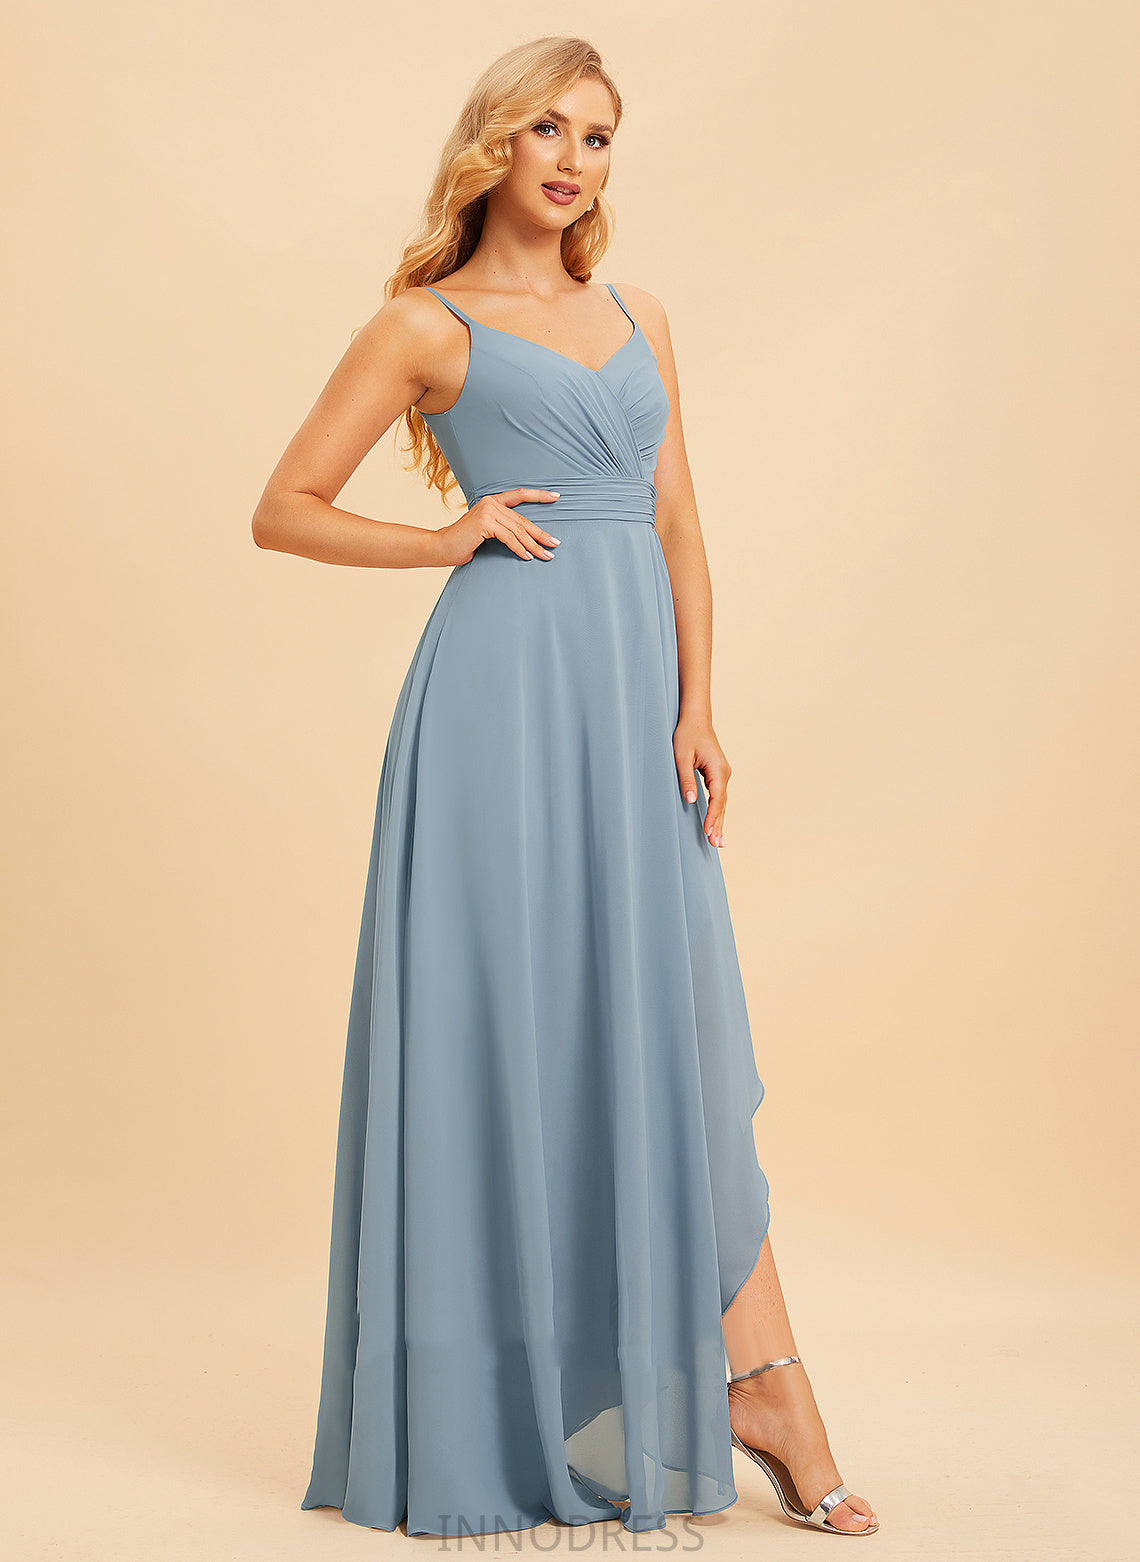 A-Line Ruffle Fabric Silhouette V-neck Length Neckline Embellishment Asymmetrical Renee A-Line/Princess Floor Length Bridesmaid Dresses